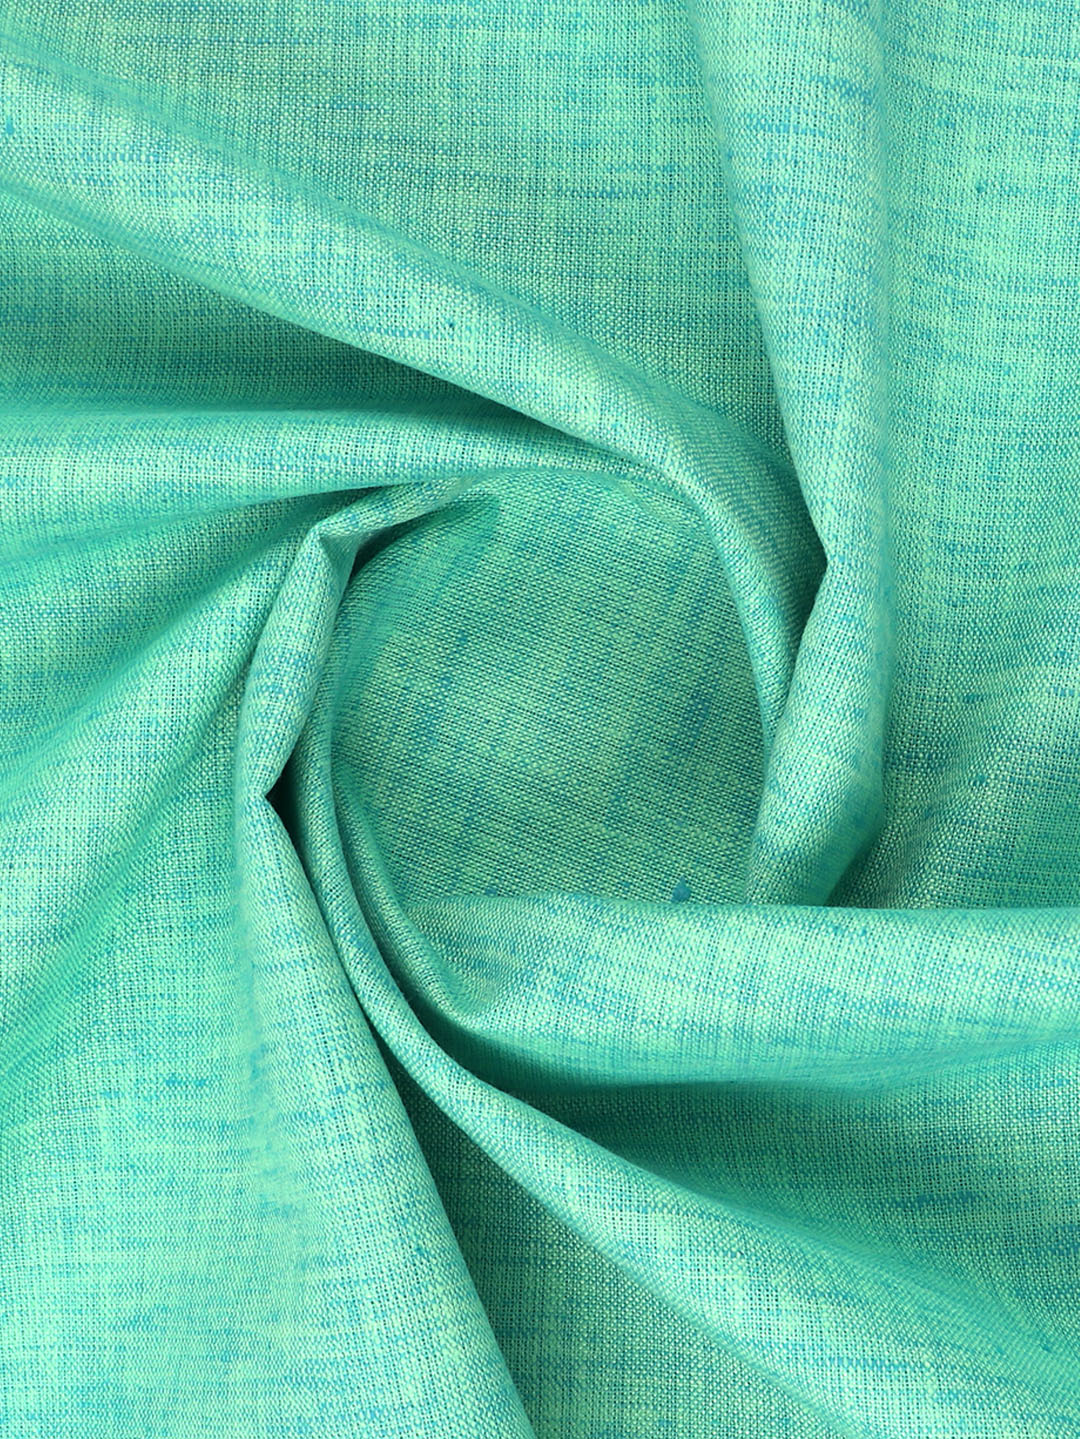 Cotton Blend Dark Green Colour Kurtha Fabric Lampus - CAPC1160-29